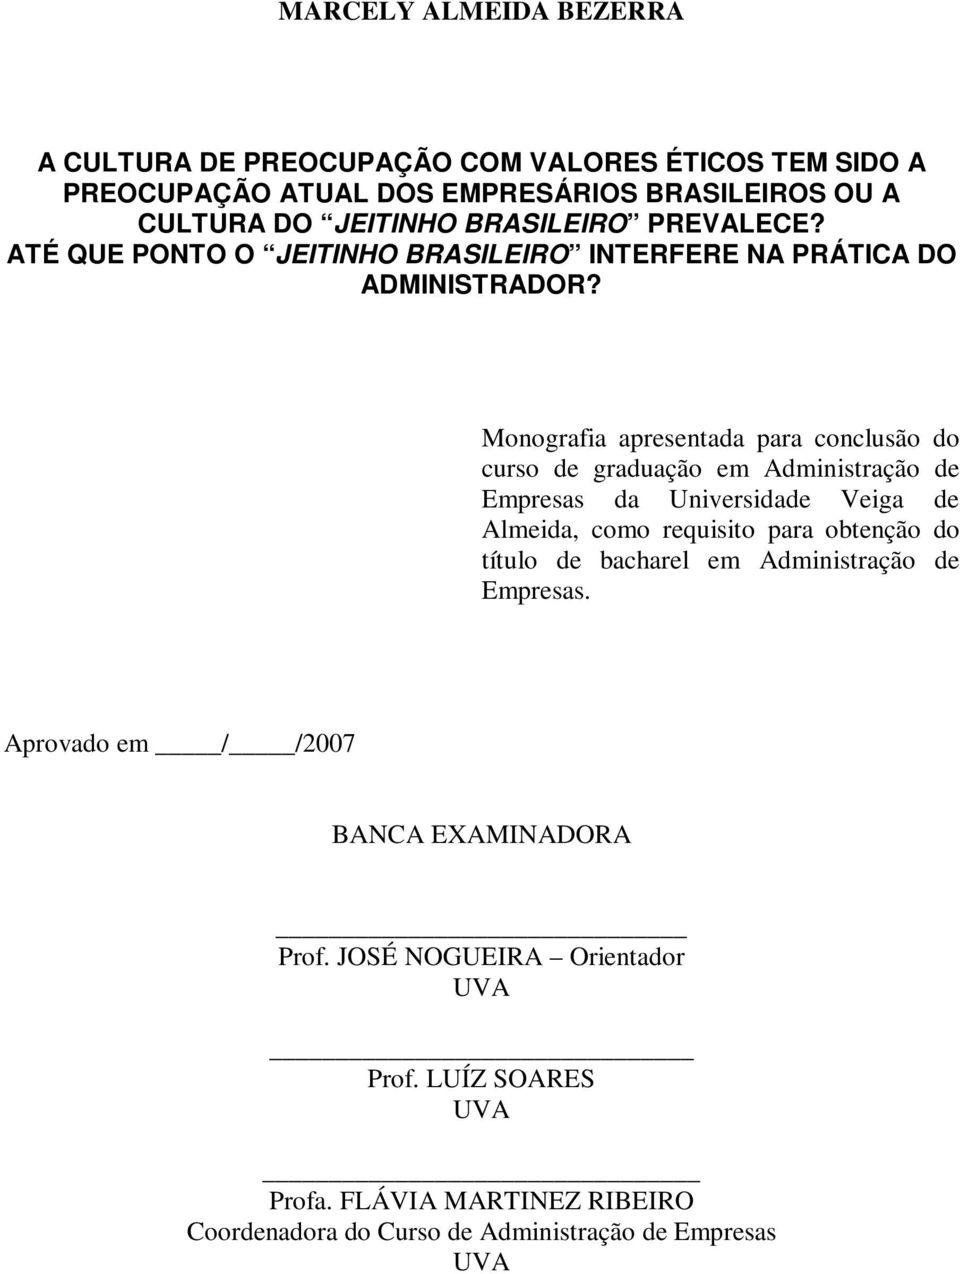 Monografia apresentada para conclusão do curso de graduação em Administração de Empresas da Universidade Veiga de Almeida, como requisito para obtenção do